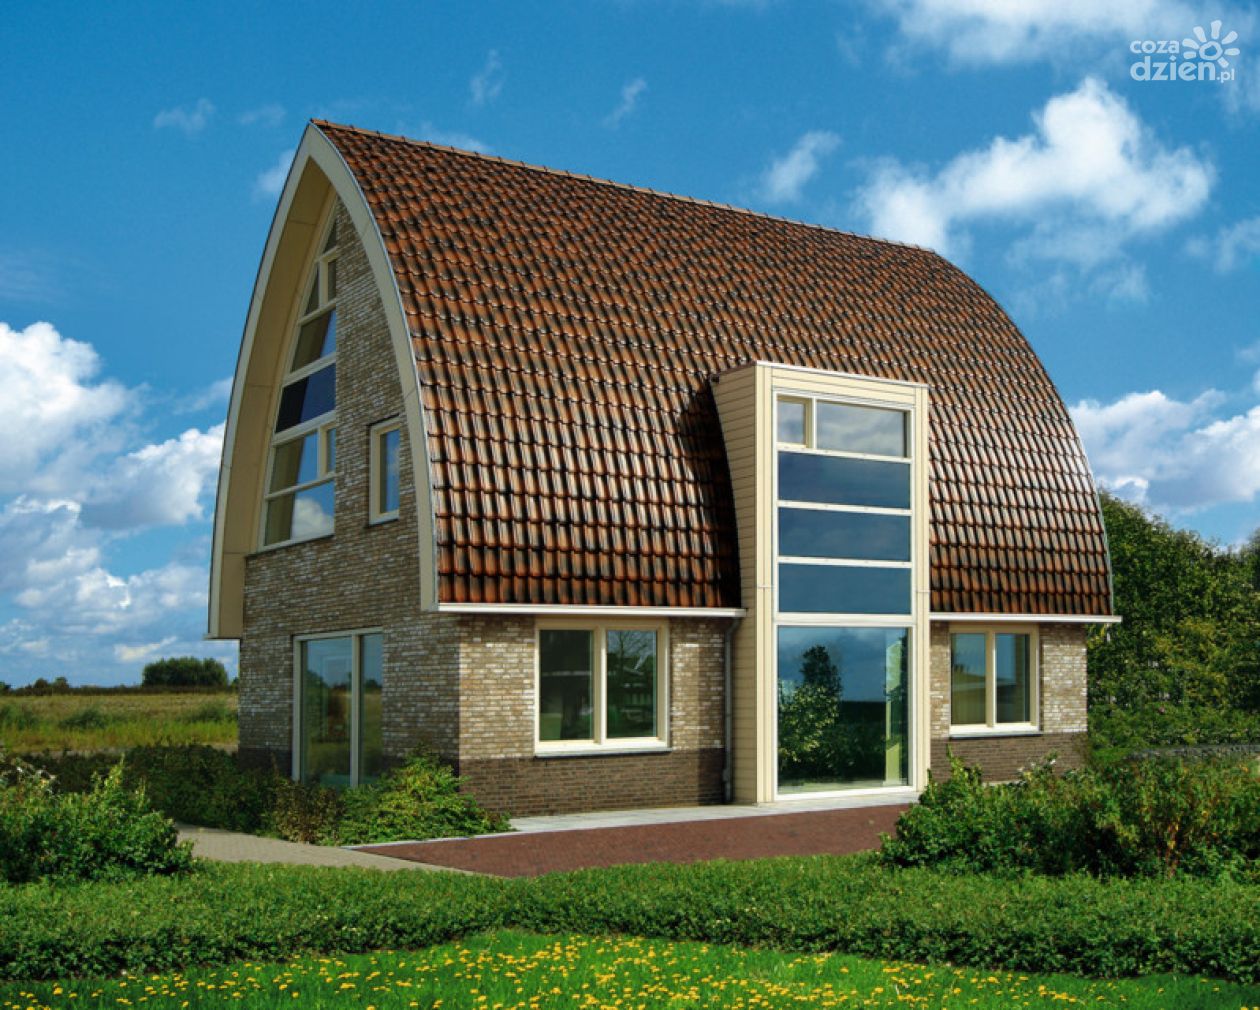 Jak wybrać materiał na dach swojego domu? BAiKA – Dachy, Okna, Elewacje - podpowiada!